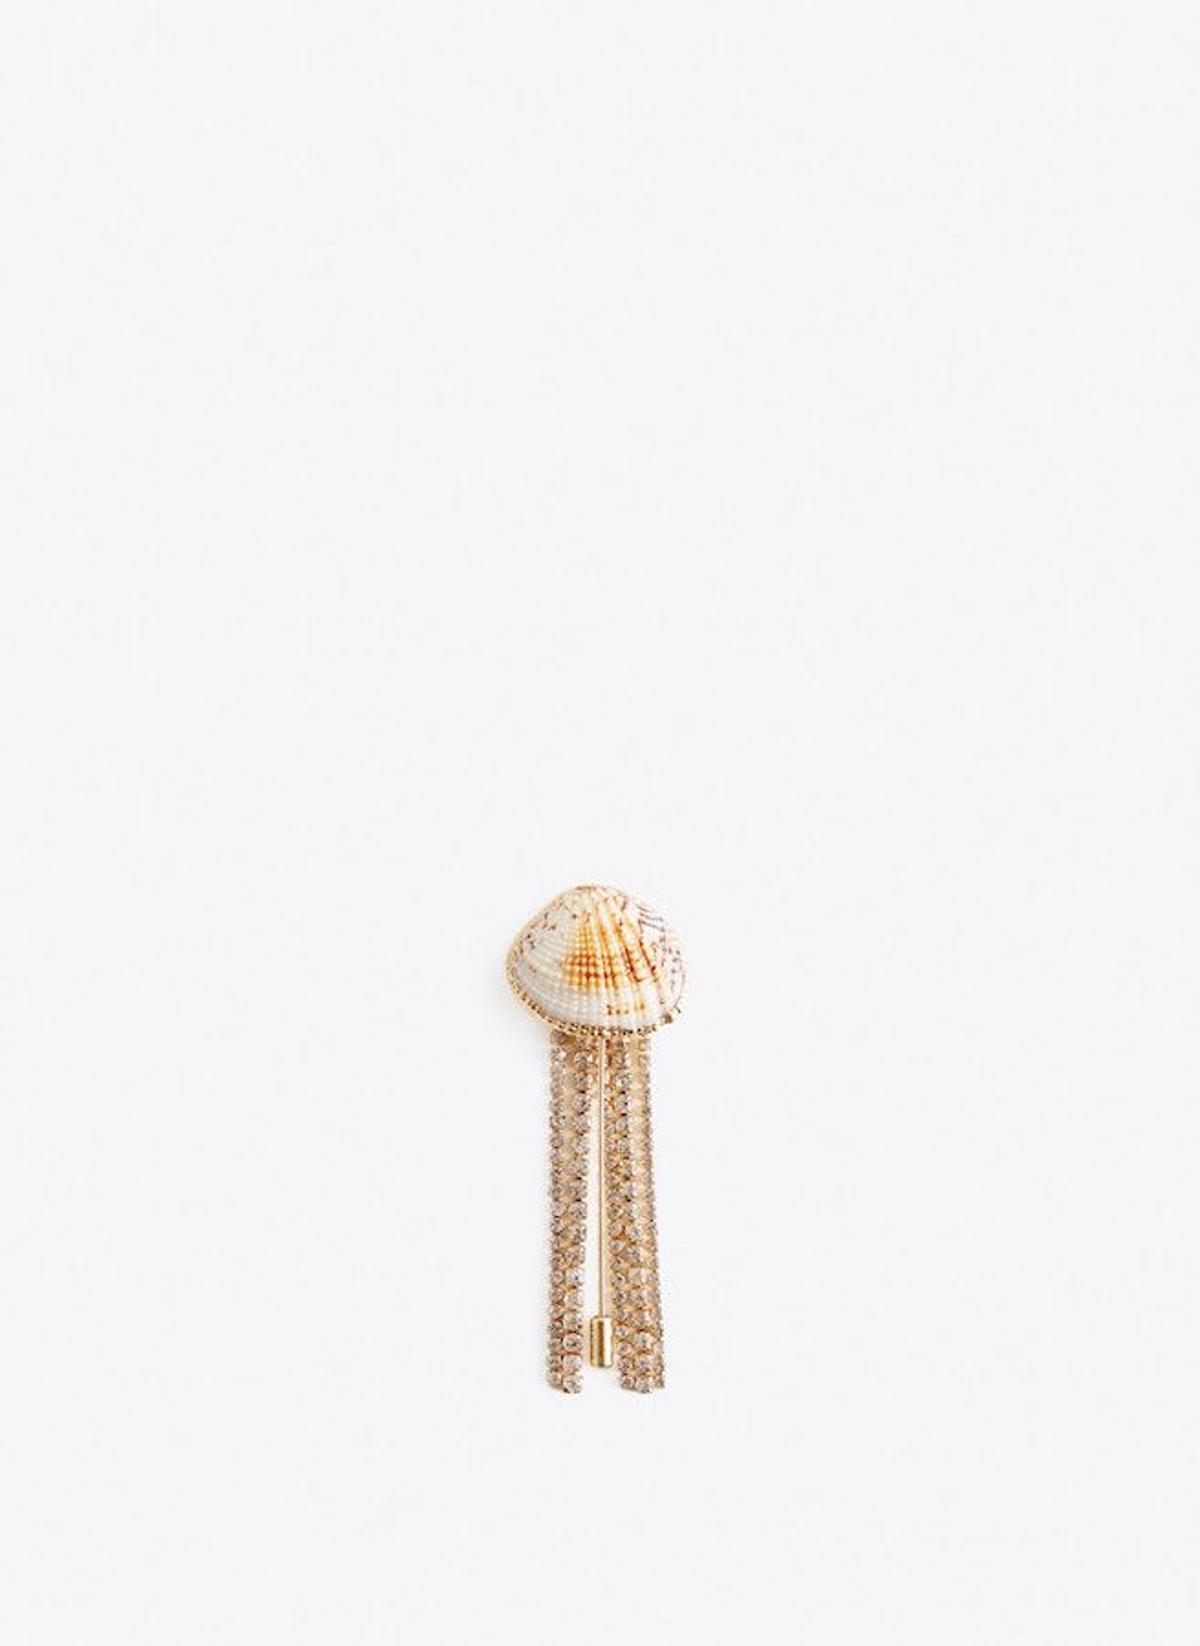 Broche con concha y detalles dorados, de Uterqüe